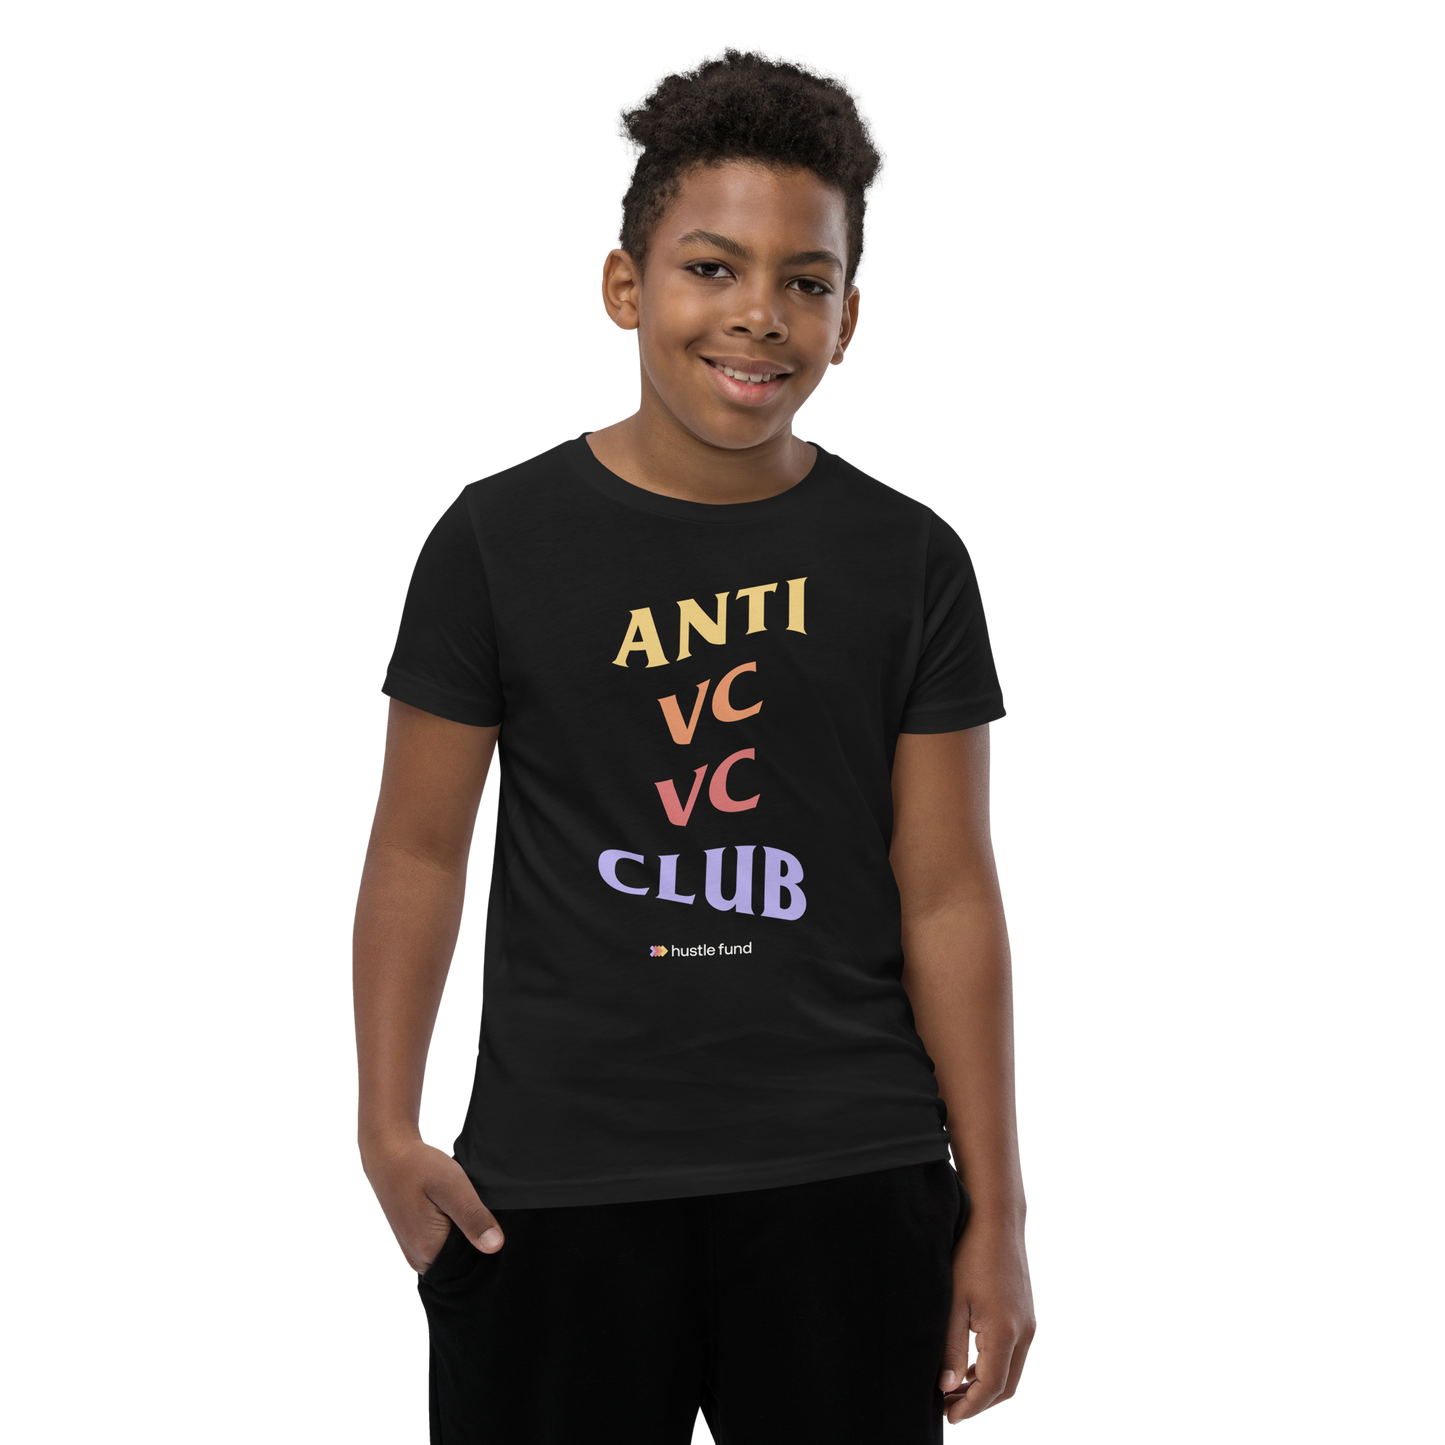 Anti VC VC Club Youth Unisex T-Shirt